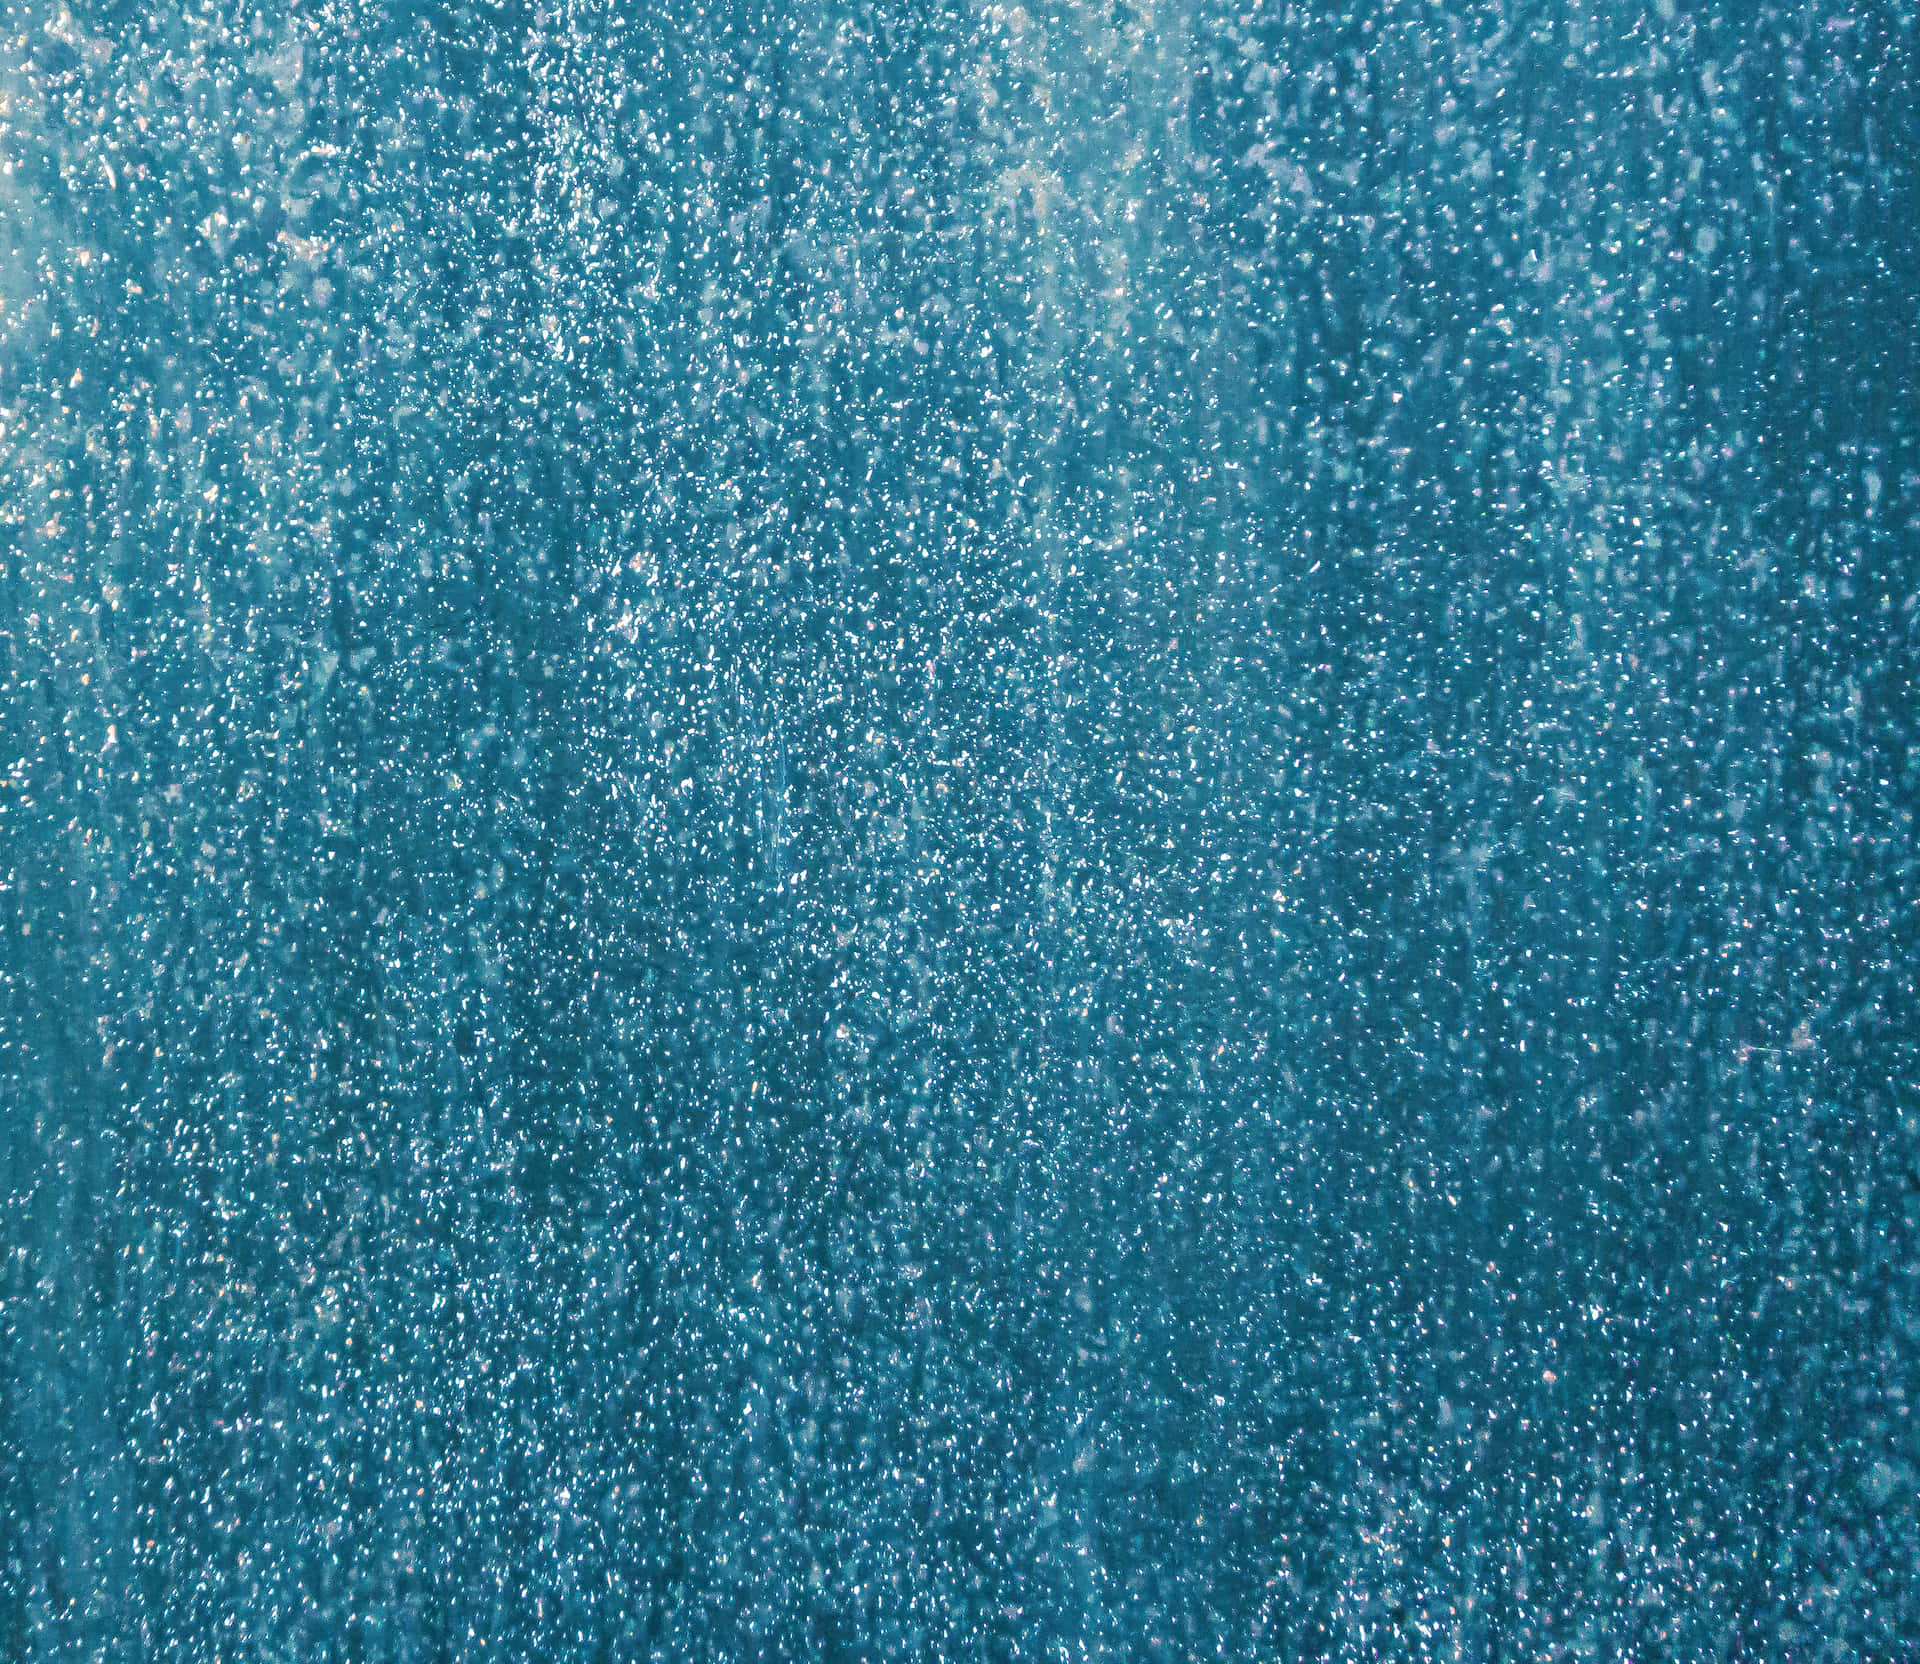 Eineblaue Wand Mit Viel Wasser Darauf